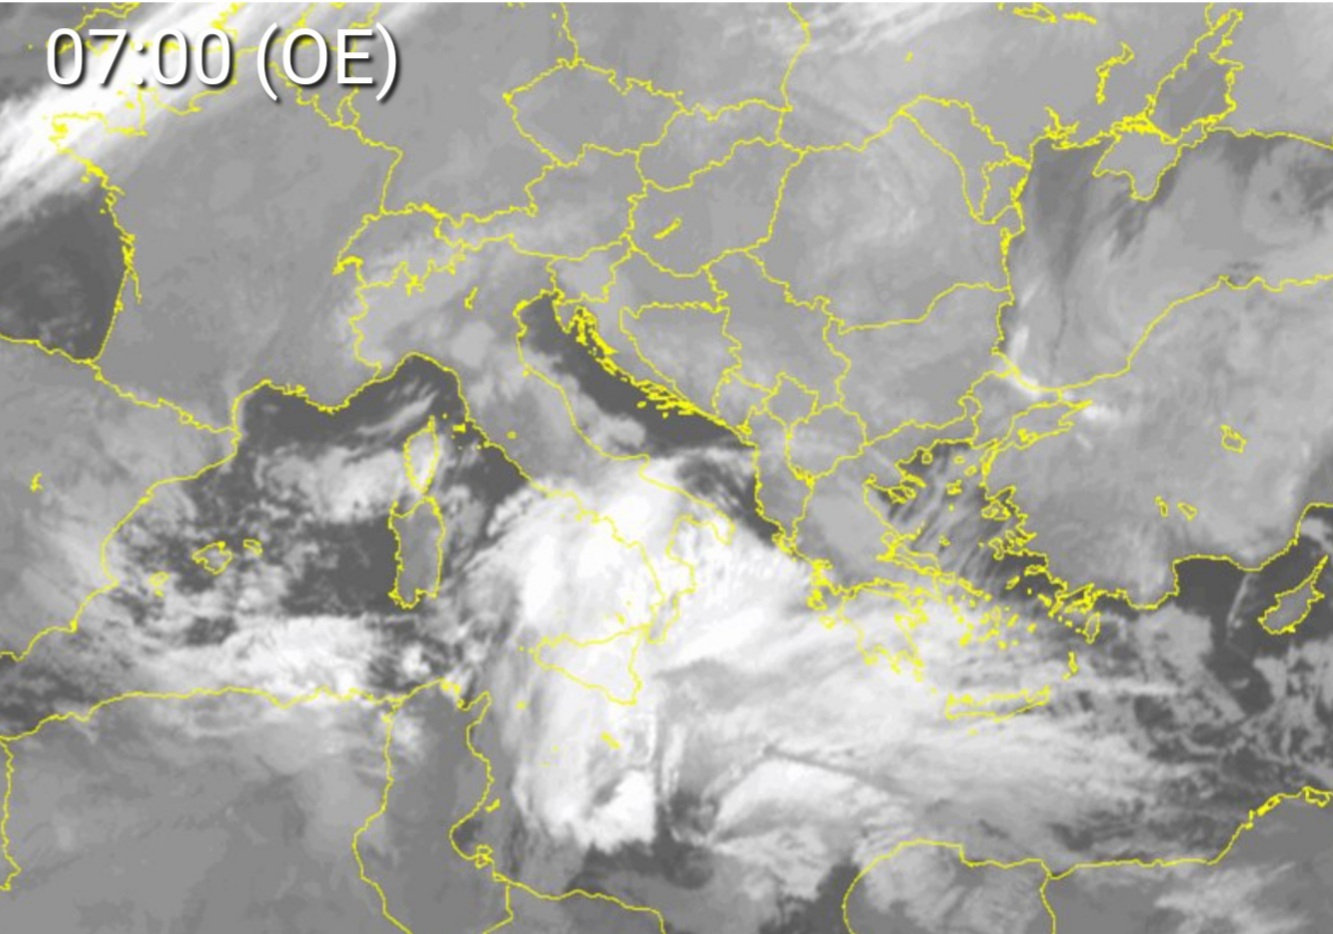 Meteo Sicilia: Ciclone Mediterraneo in risalita! Nubifragi e forti venti sui settori sud-orientali. Tanta neve in montagna. È solo l'inizio!